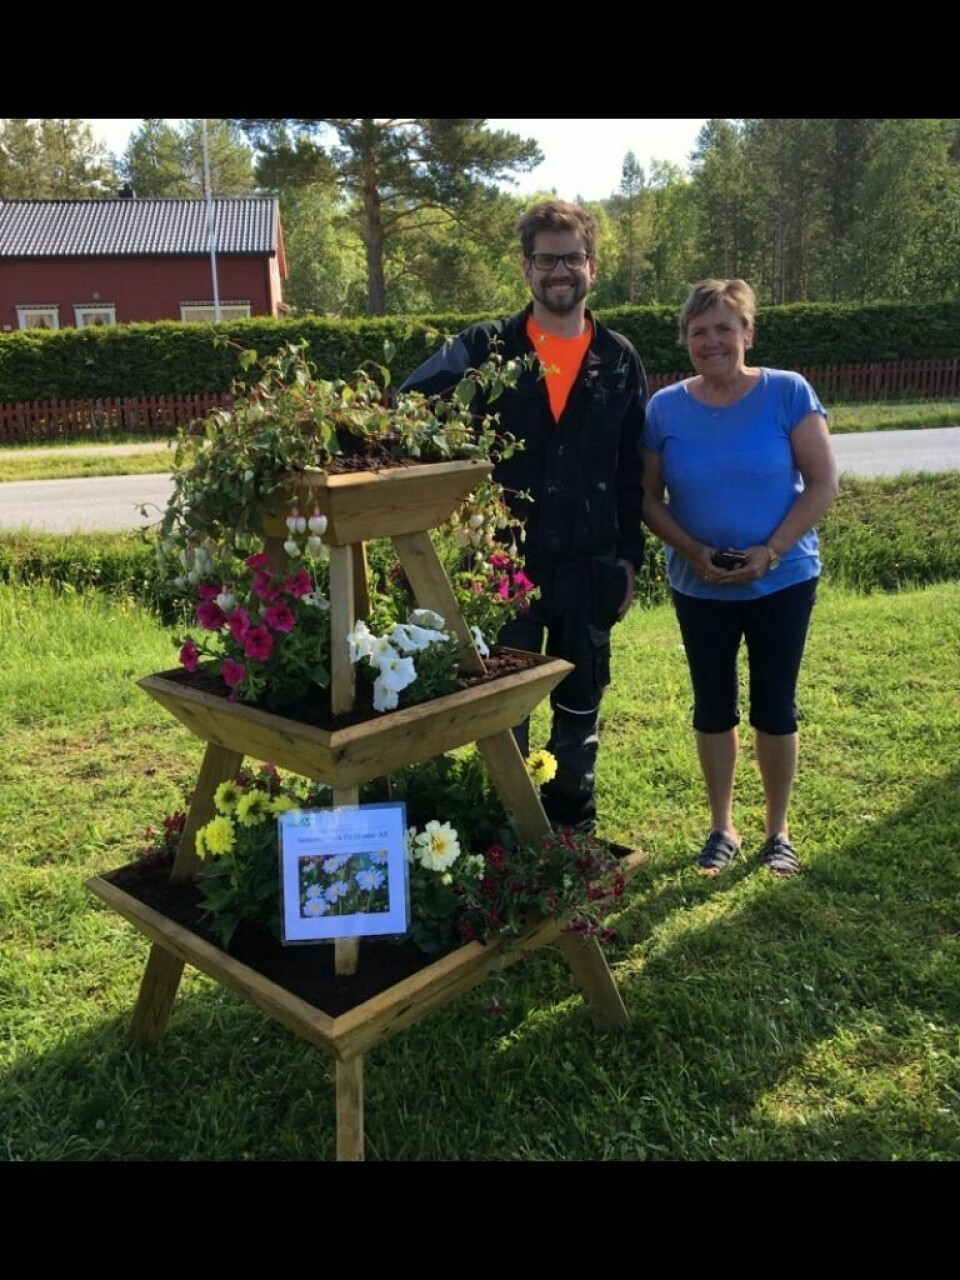 OVERLEVERTE GAVE: Christoffer Gschib fra Montar overleverte nylig en blomsterpyramide i gave til Målselv kommune, som her er representert ved Unni Dahl-Thorstensen. Foto: Montar